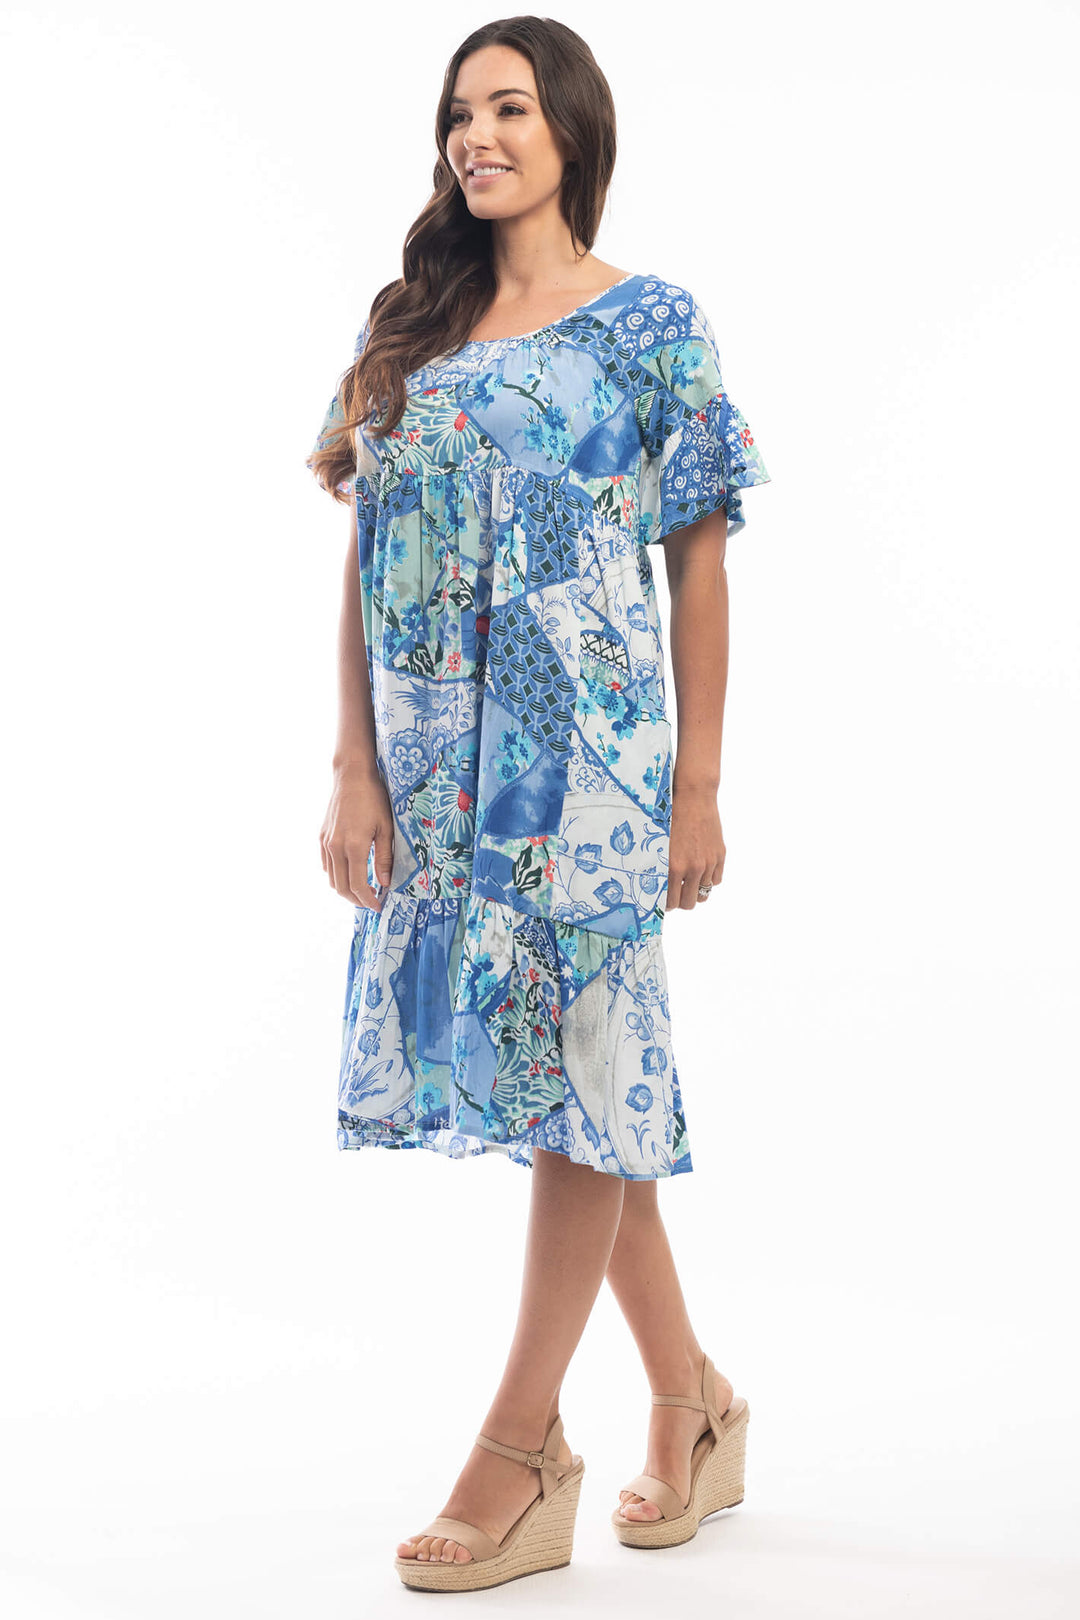 Orientique 2126 Blue Kintsugi Print Sort Sleeve Dress - Experience Boutique